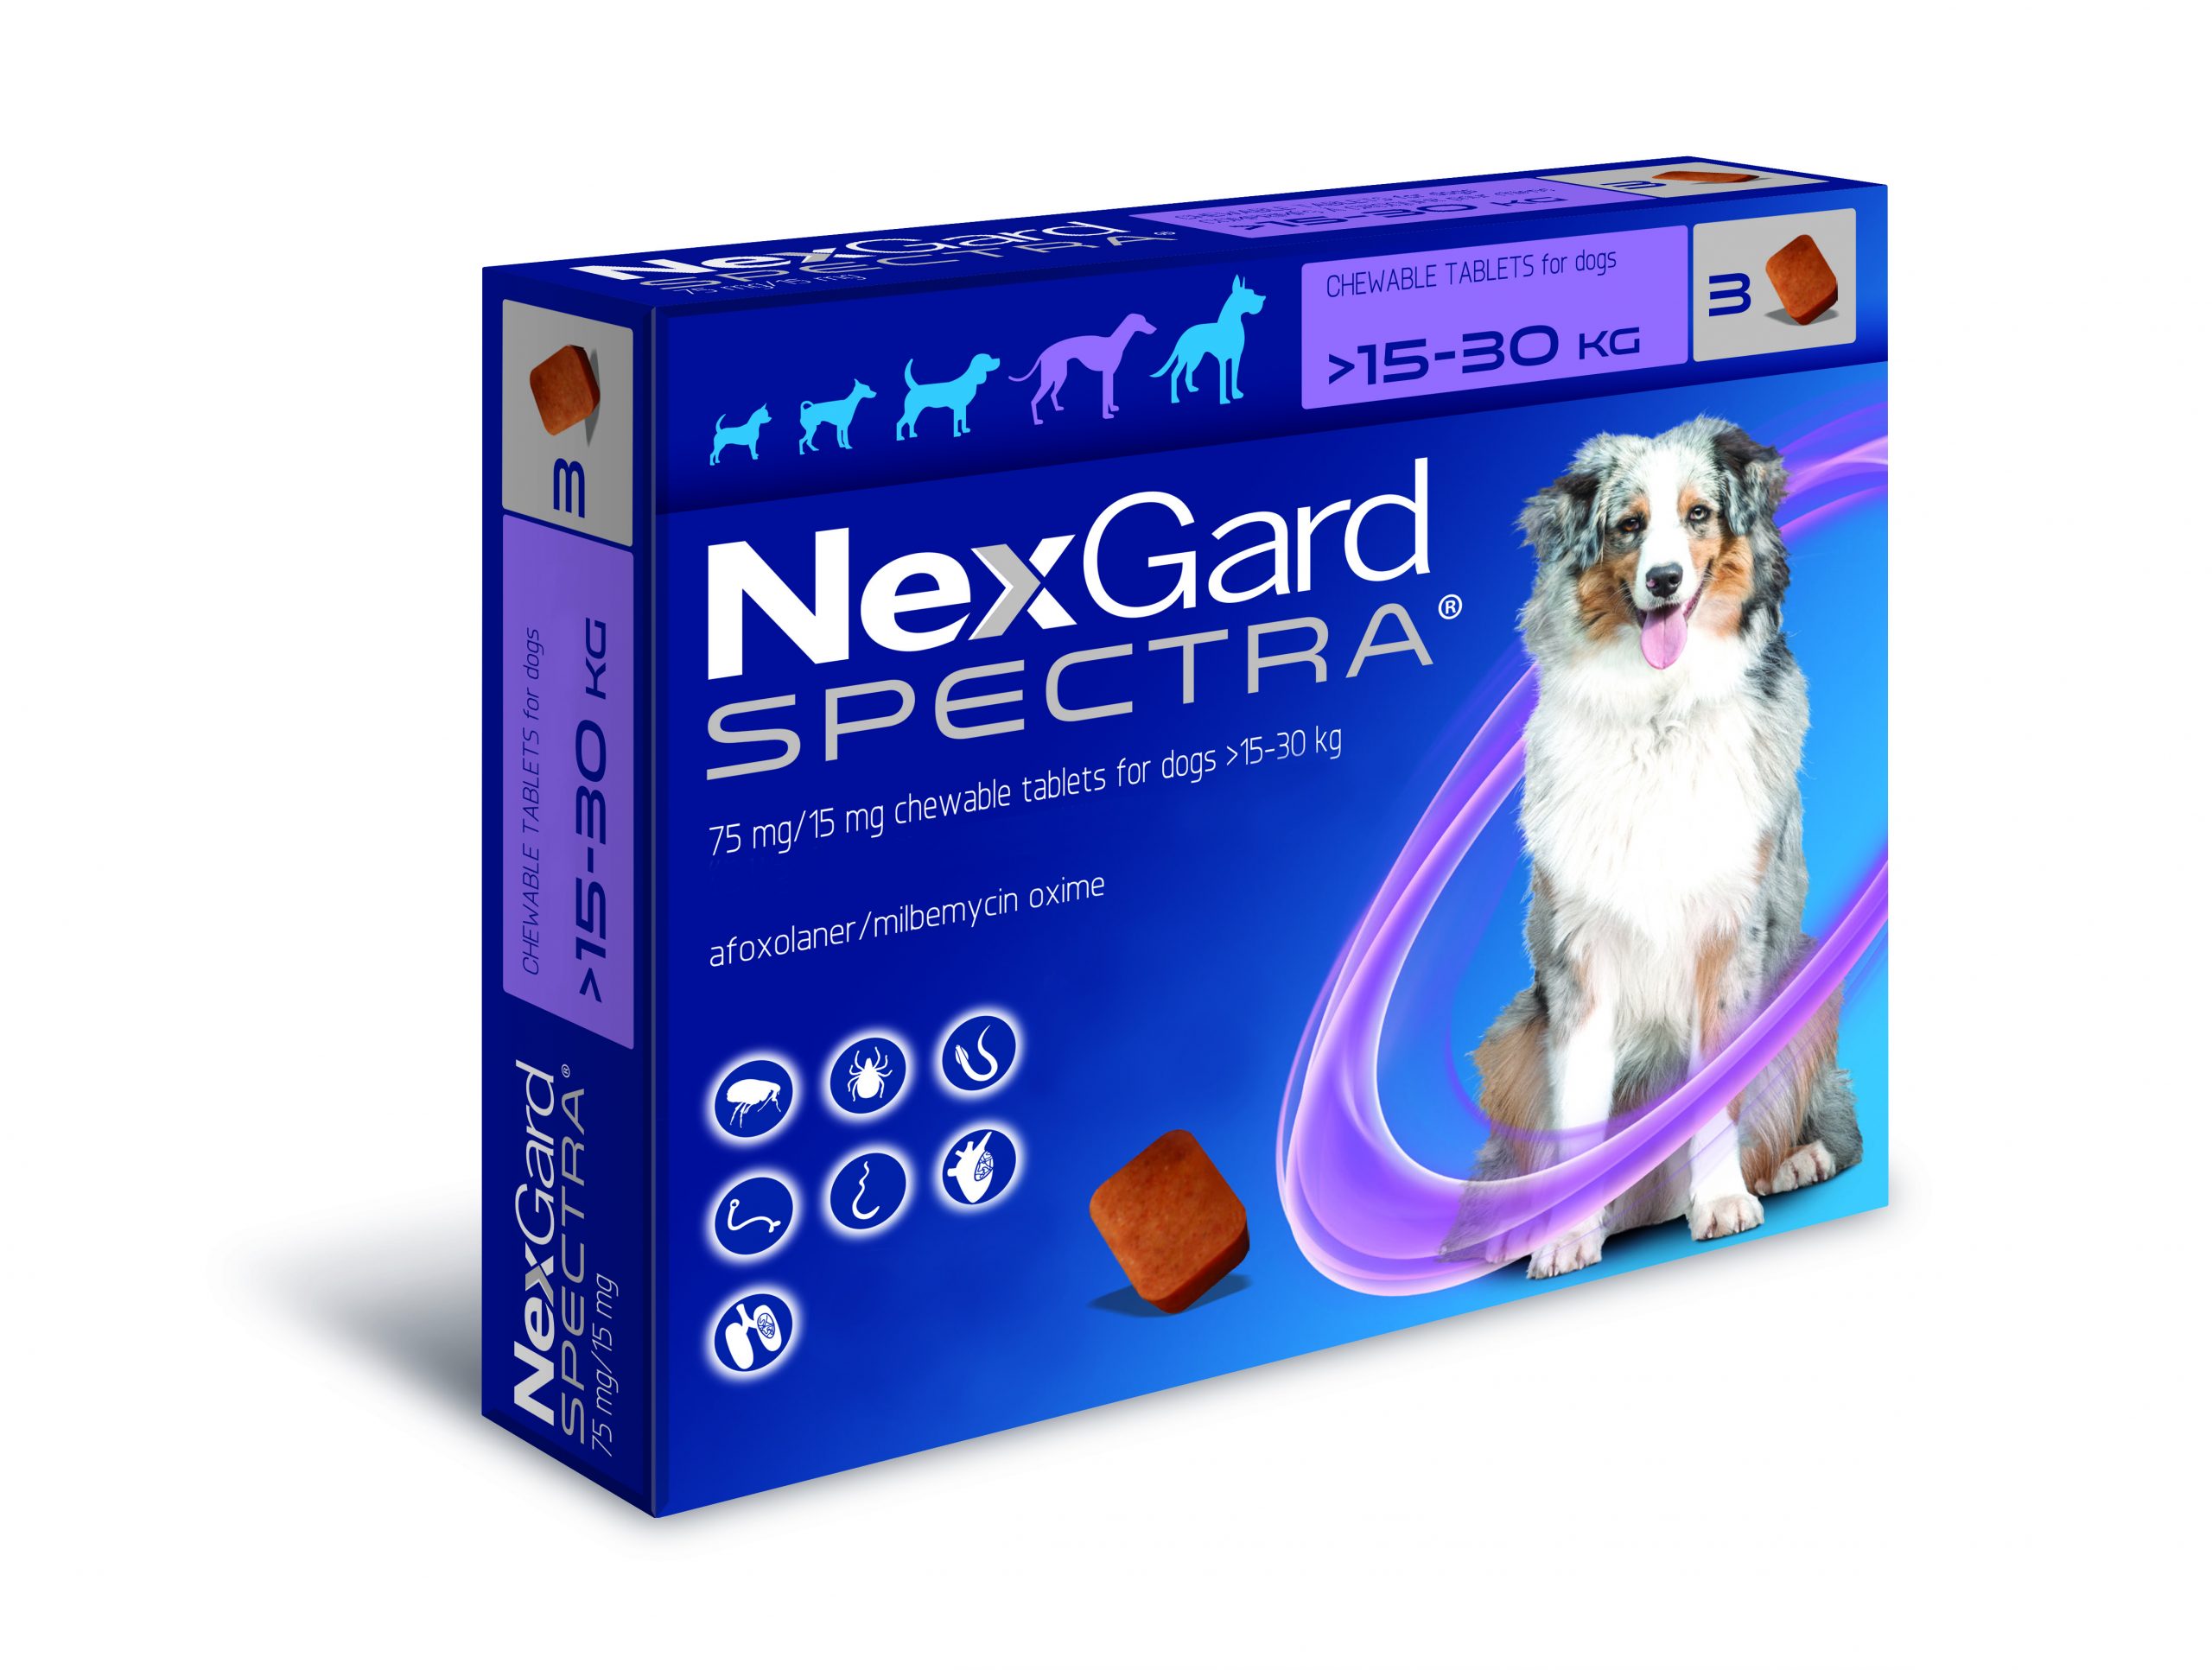 Nexgard spectra. НЕКСГАРД спектра. NEXGARD Spectra для собак 3 компонентная 1 большая и 2 маленькие. НЕКСГАРД для кошек. NEXGARD Spectra funciona Италия.